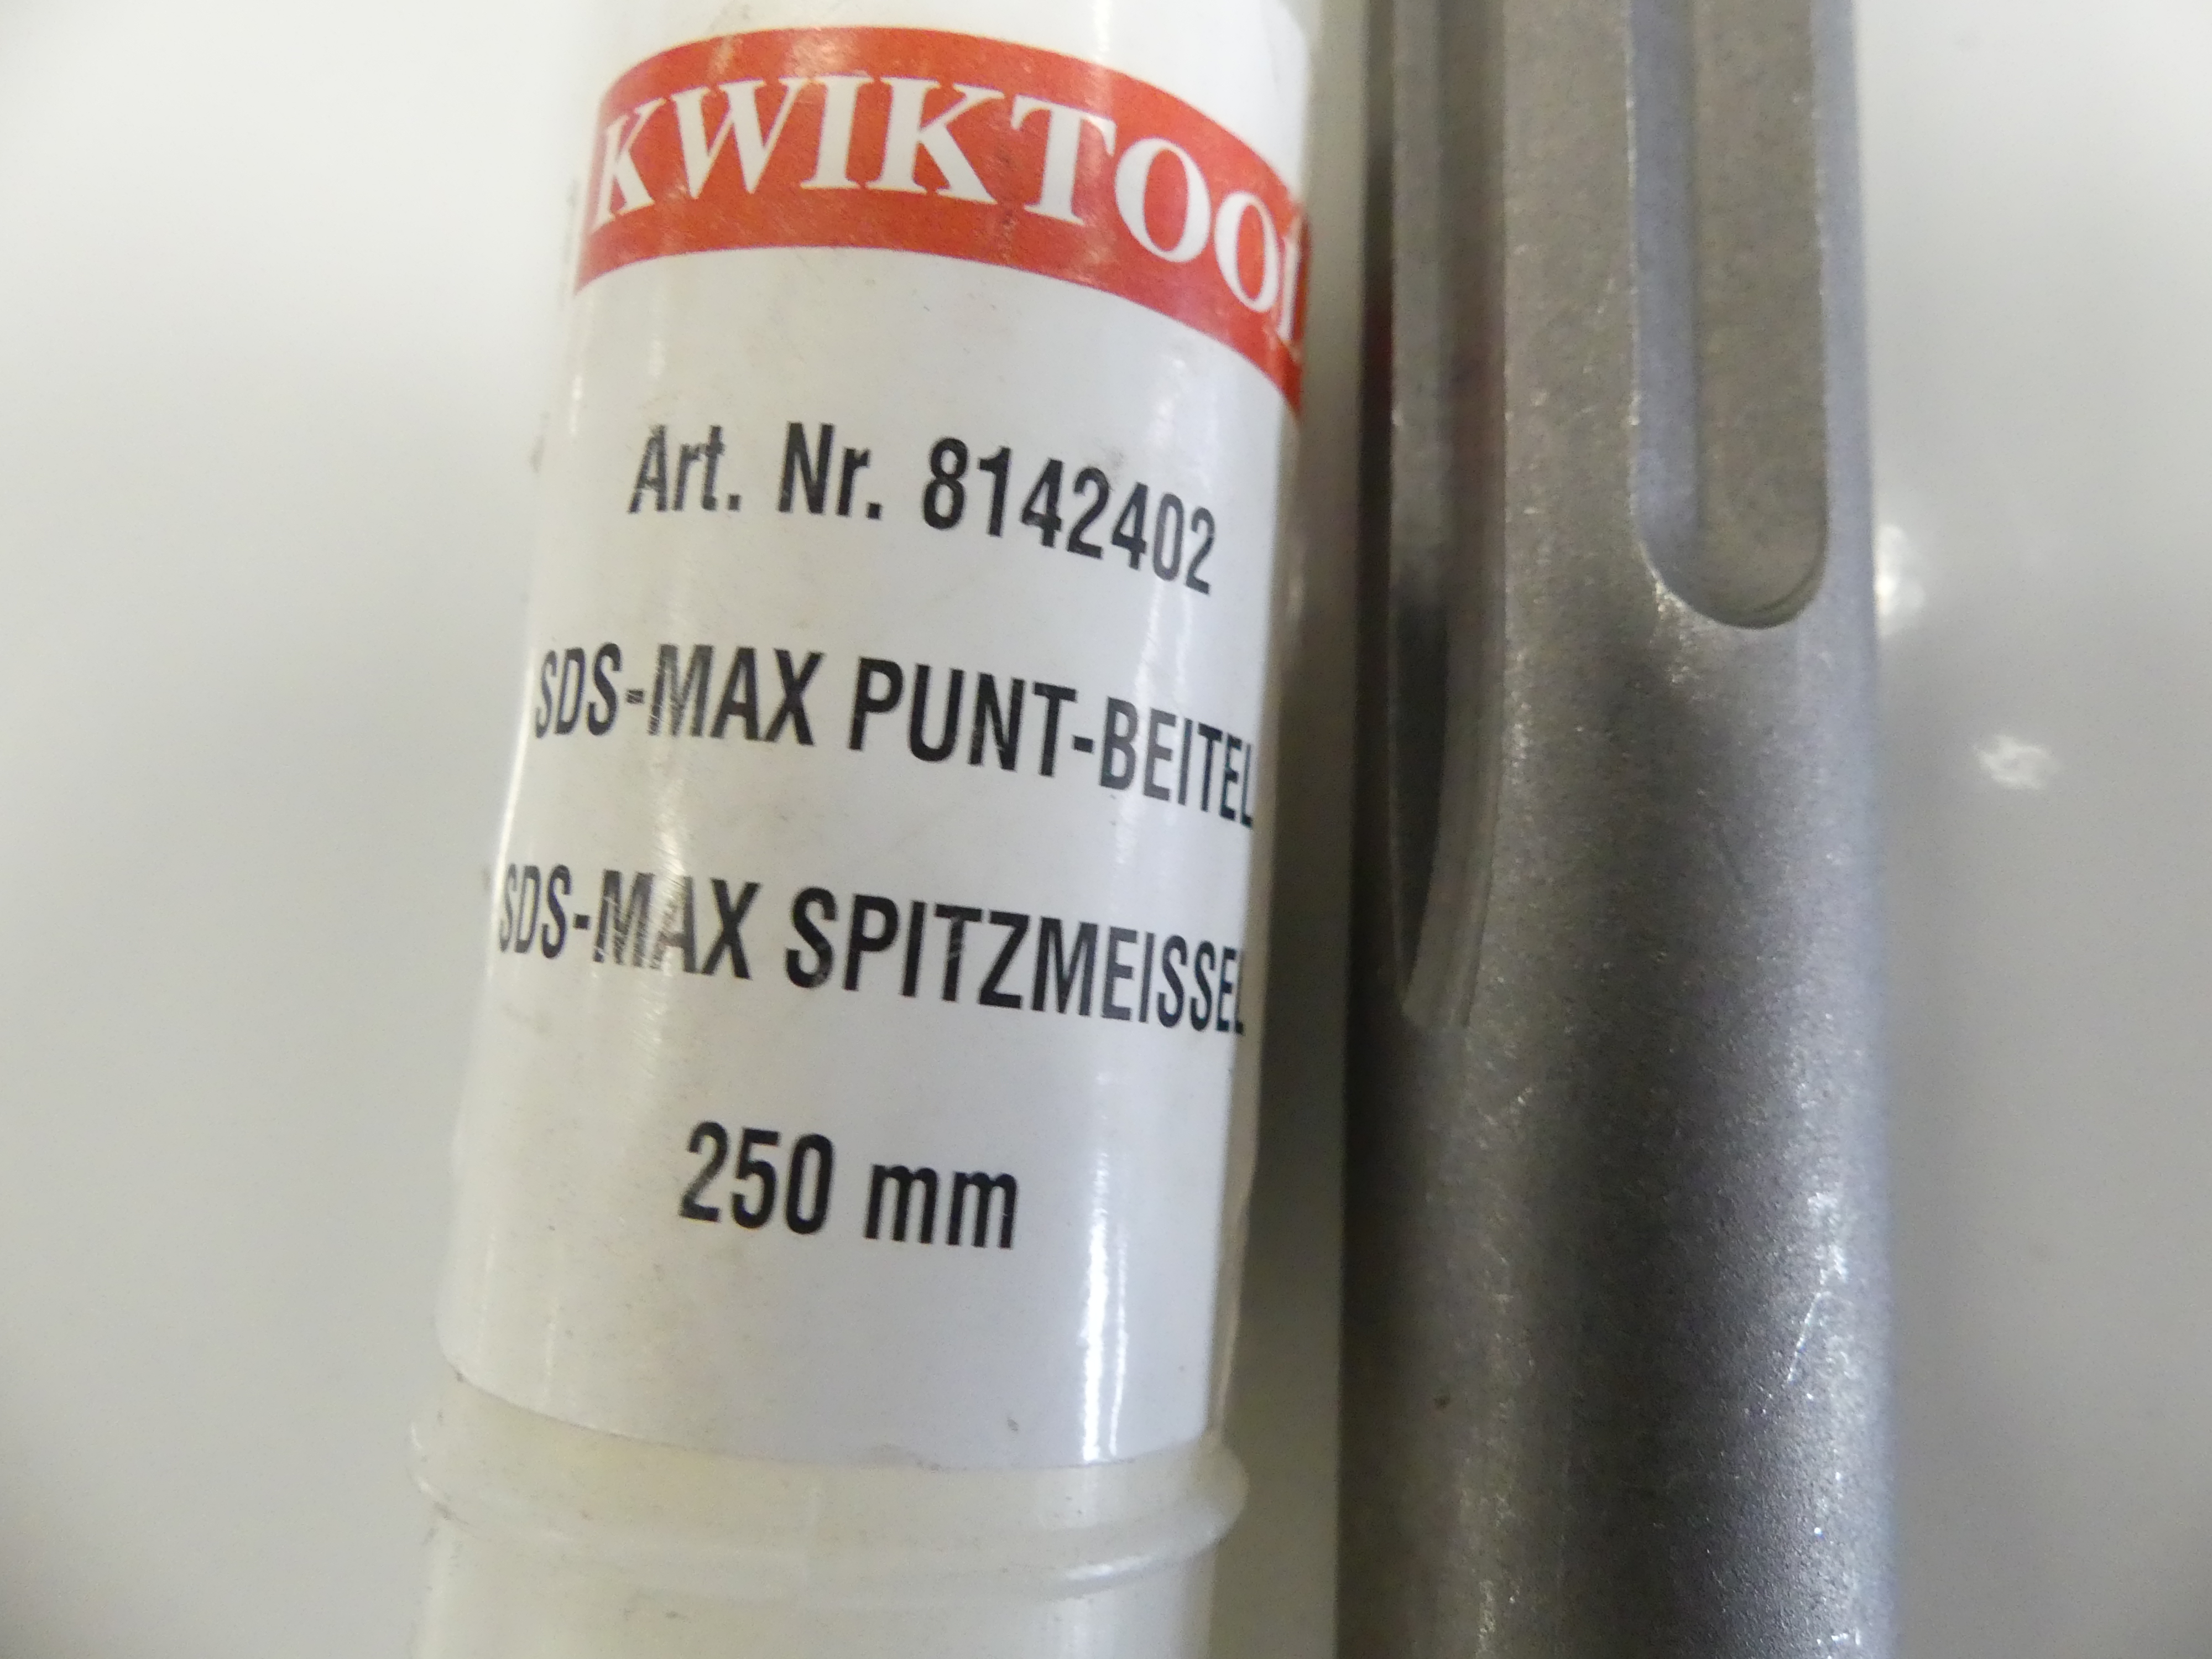 Kwiktool SDS-MAX puntbeitel 250mm 